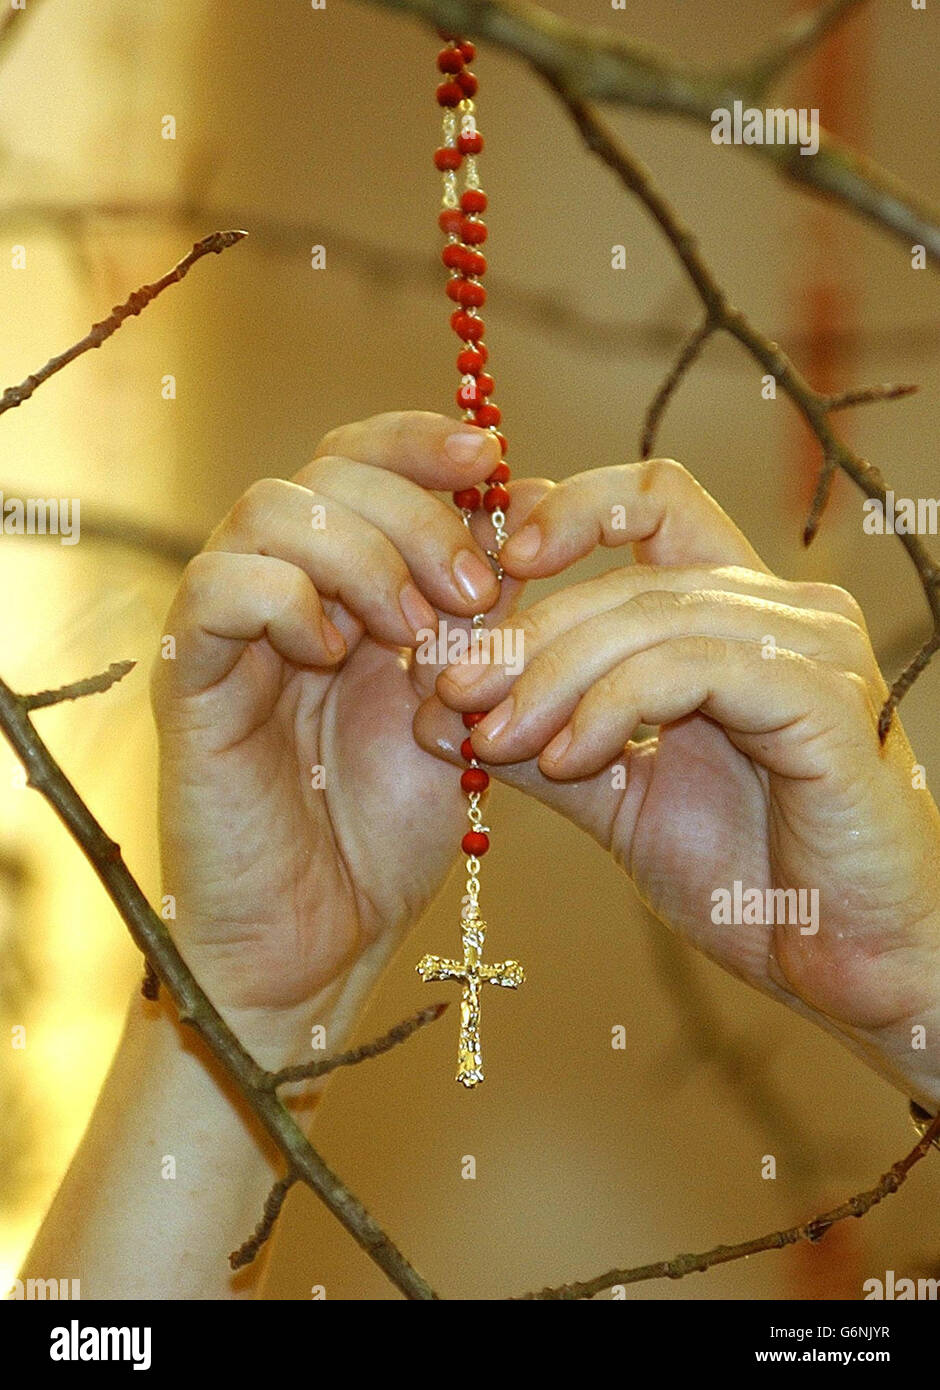 El artista Mark Wallinger cuelga los rosarios católicos en su árbol de  Navidad "provocador de pensamientos", en la galería de arte de Tate  Britain, Londres. Según la leyenda, la madera de un